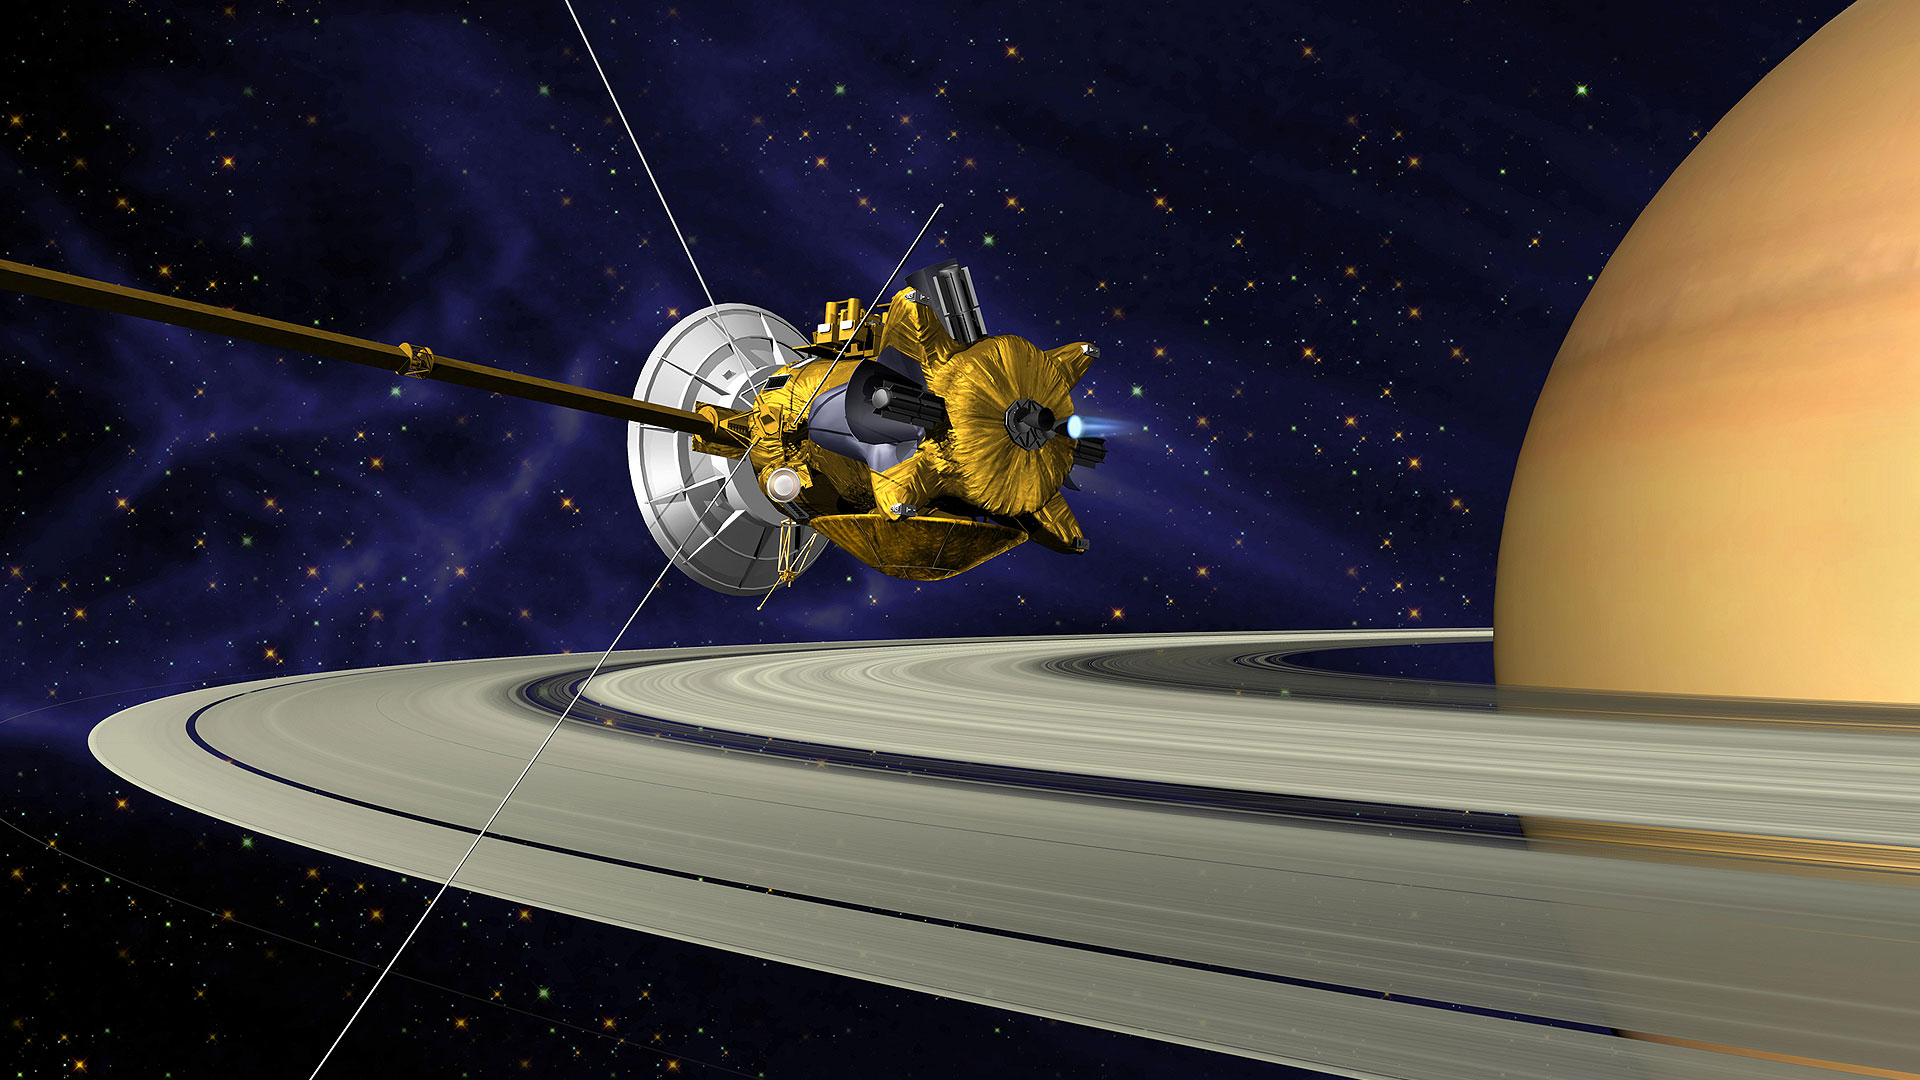 Prometheus et les anneaux de Saturne. Image extraordinaire d'un petit satellite de Saturne,Prometheus,perturbant un de ses anneaux et accrétant du matériel de celui-ci. Pour en savoir plus: http://sci.esa.int/science-e/www/object/index.cfm?fobjectid=35229&amp;fbodylongid=1712